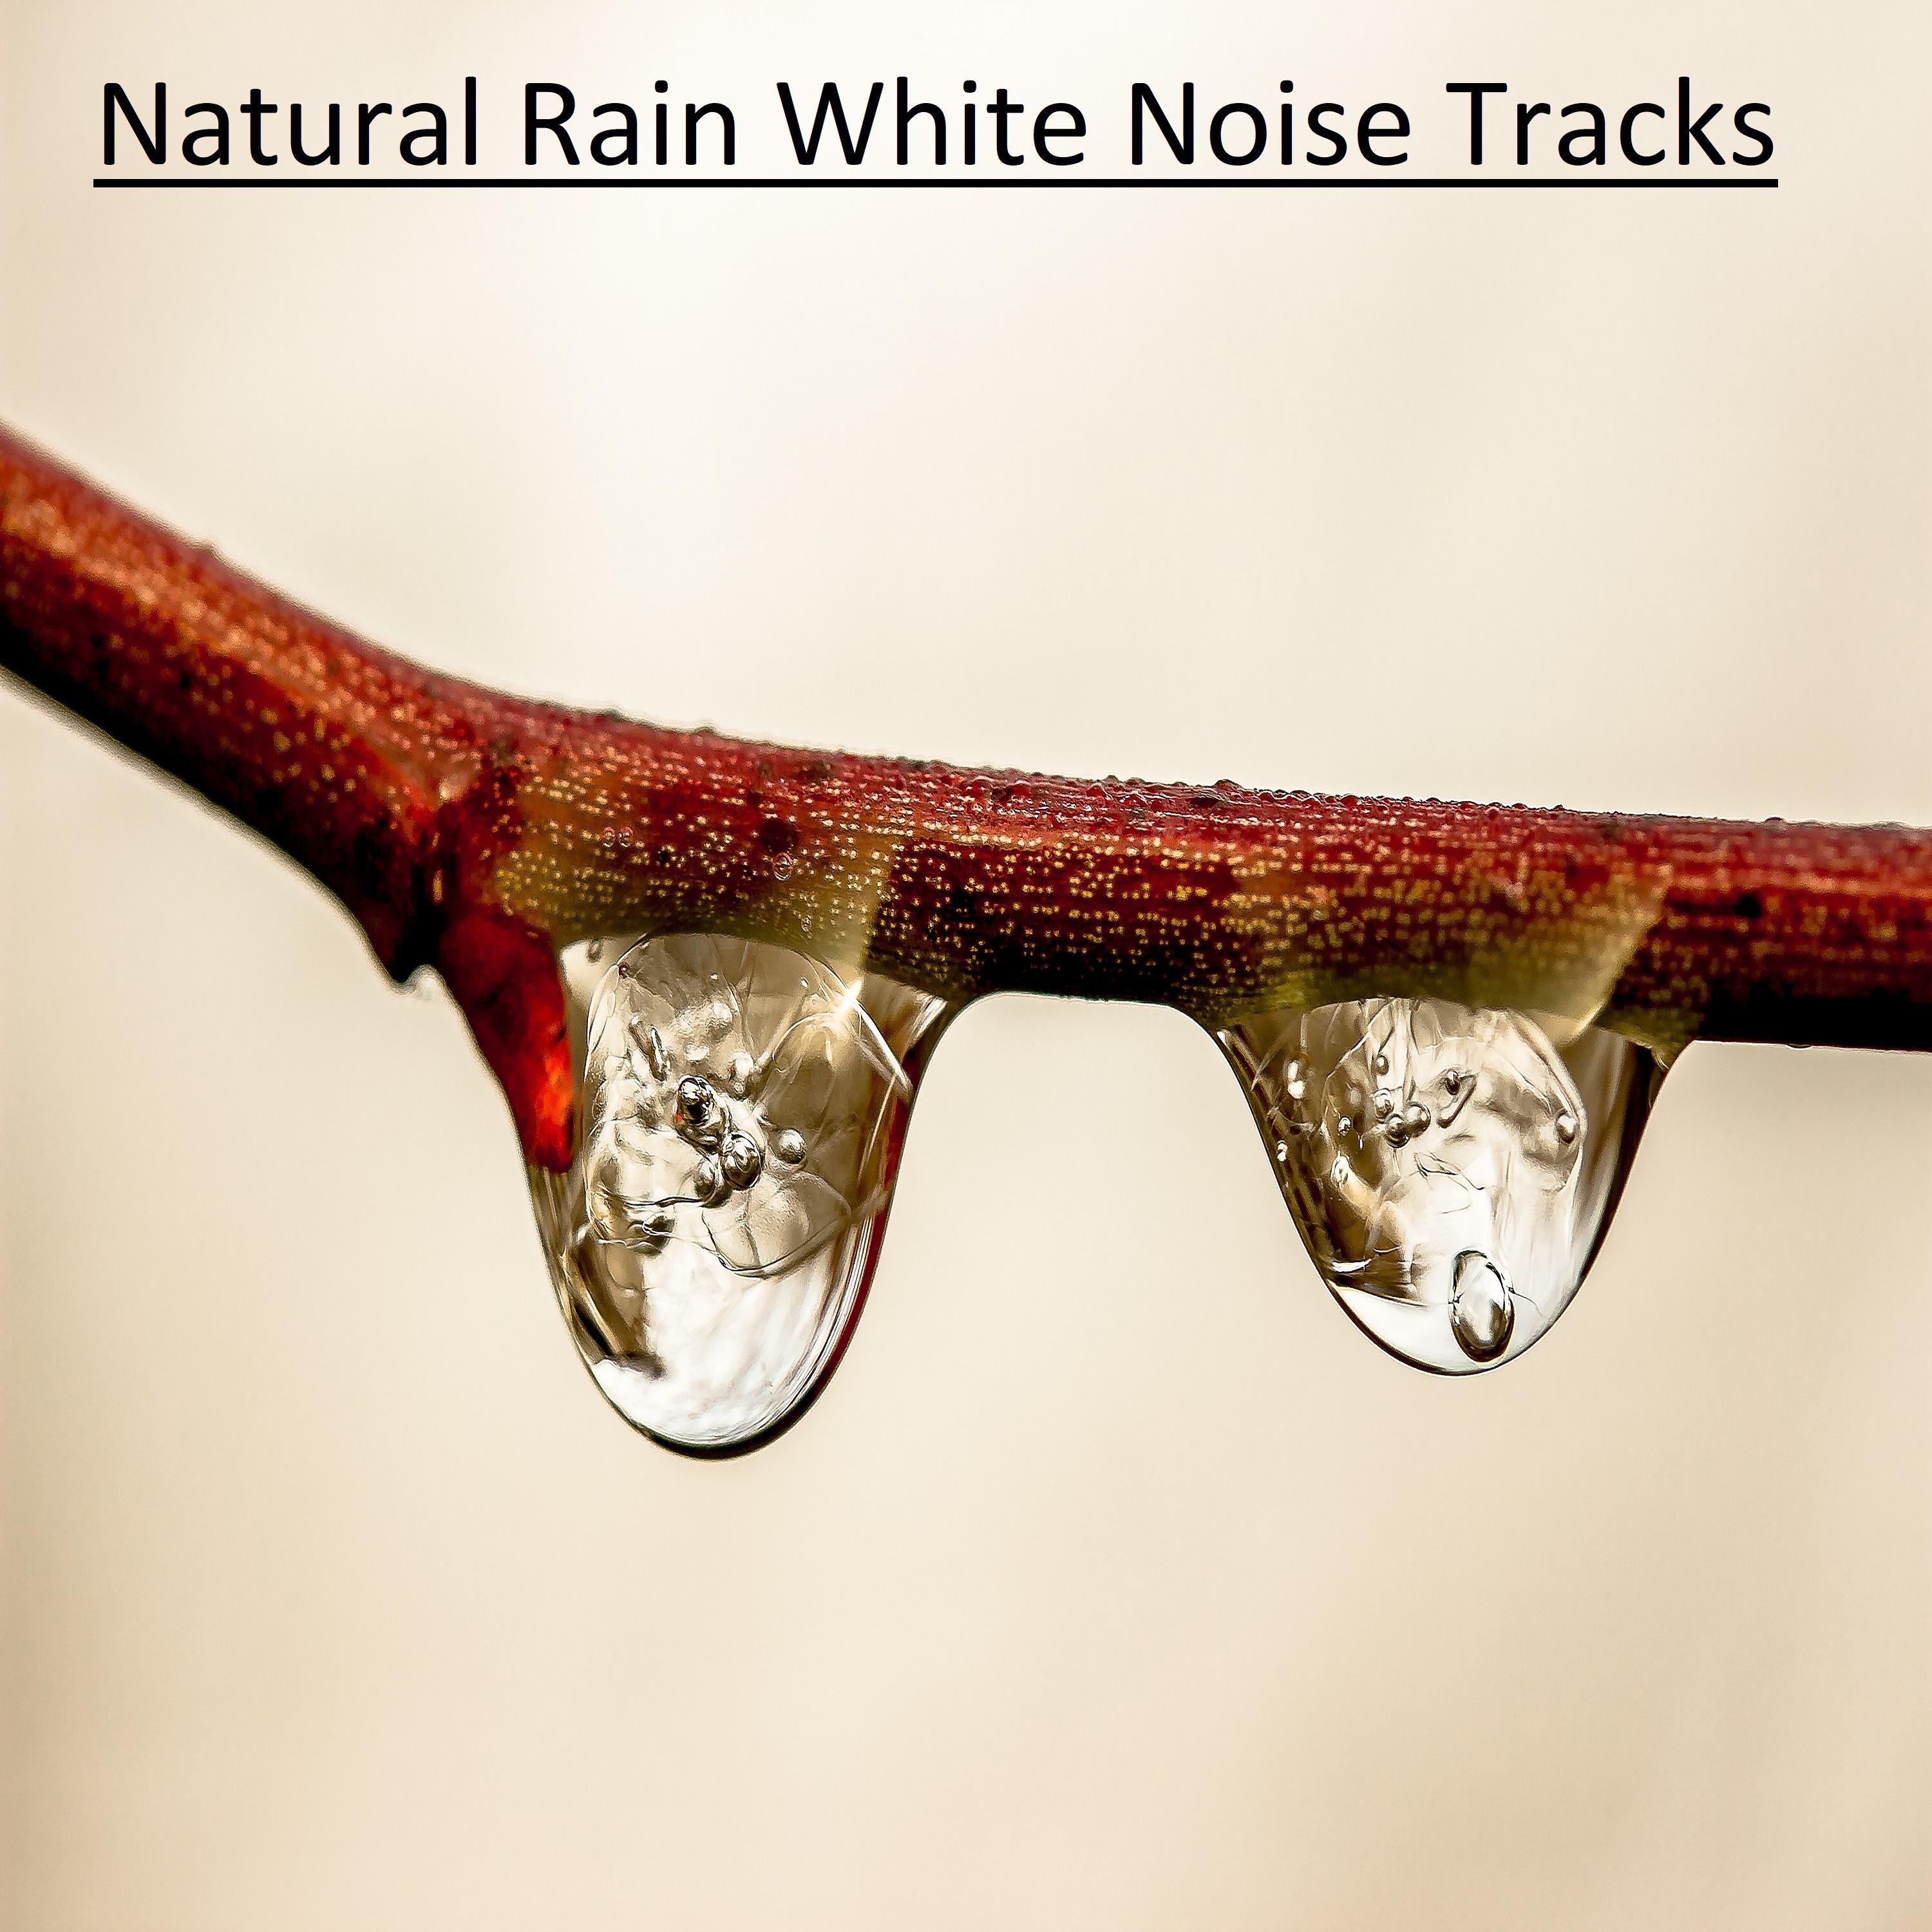 15 Natural Rain White Noise Tracks